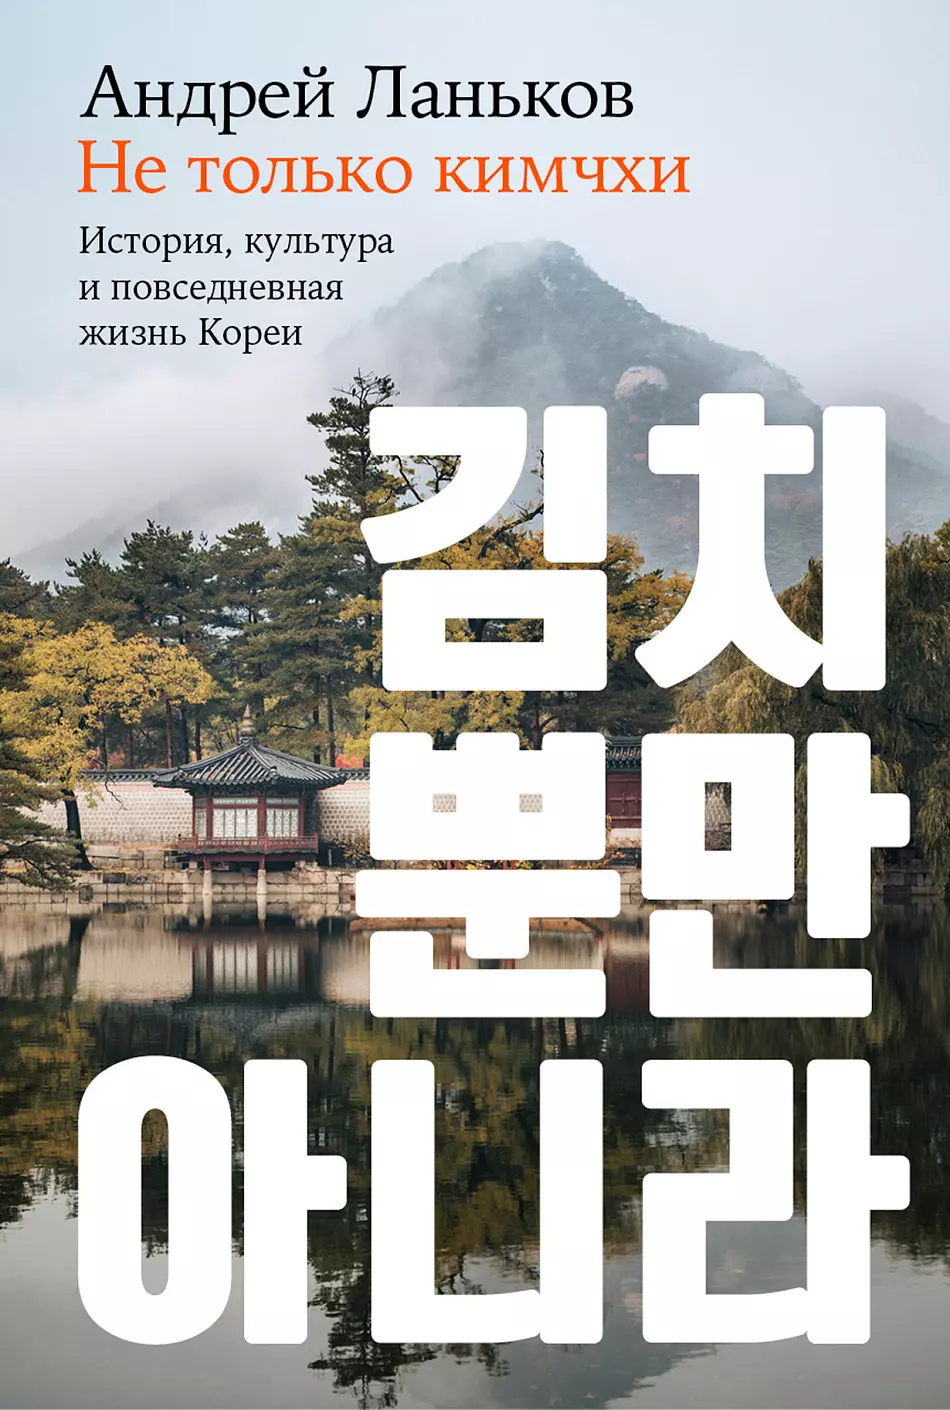 Ланьков А. Не только кимчхи. История, культура и повседневная жизнь Кореи